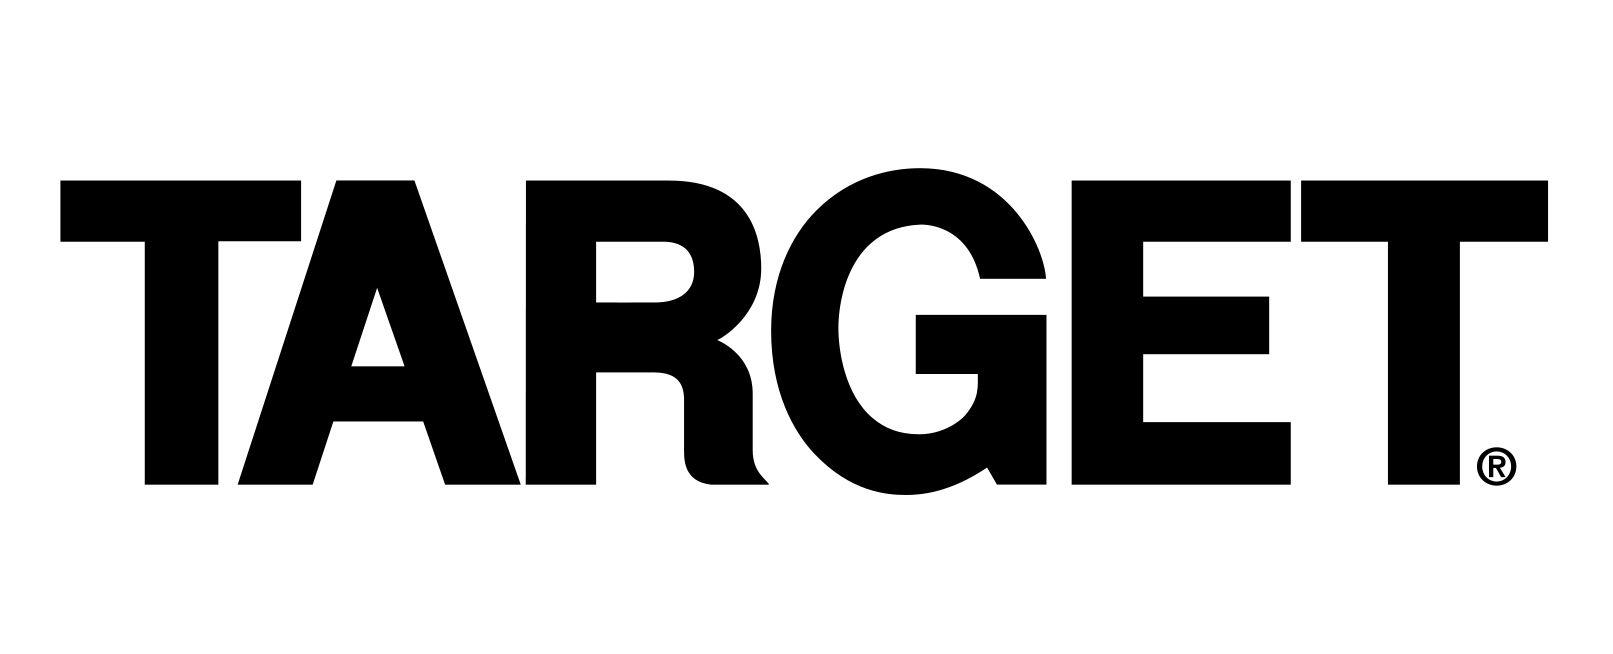 Black Target Logo - Target Logo, Target Symbol, Meaning, History and Evolution